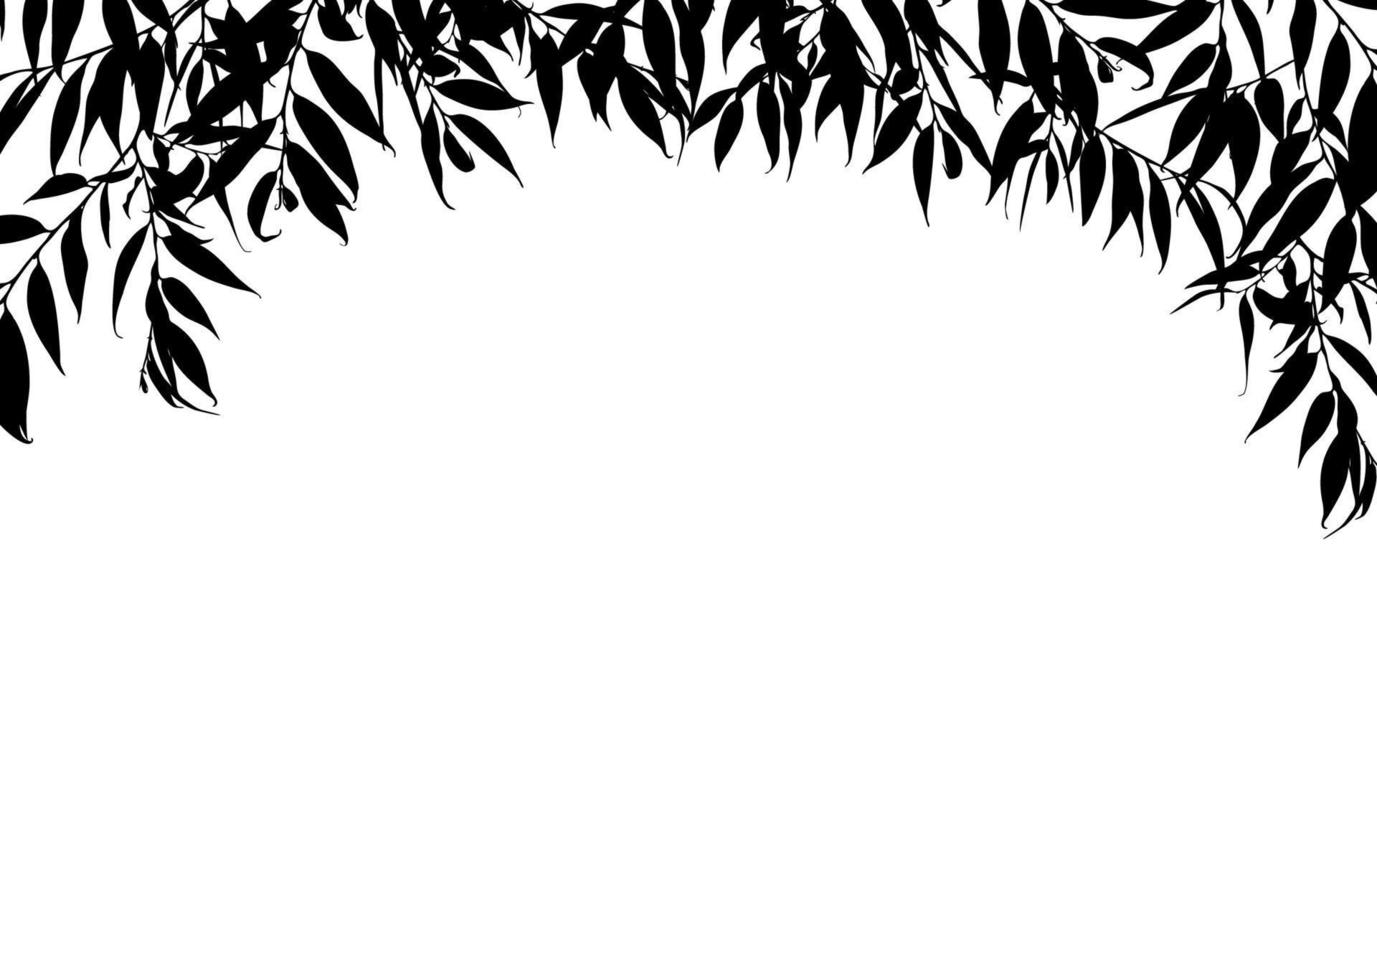 Schwarz-Weiß-Rahmen mit Blättern isoliert auf weißem Hintergrund. Platz für Text. gestaltungselement für poster, banner, flyer, einladung, karte oder web. vektor